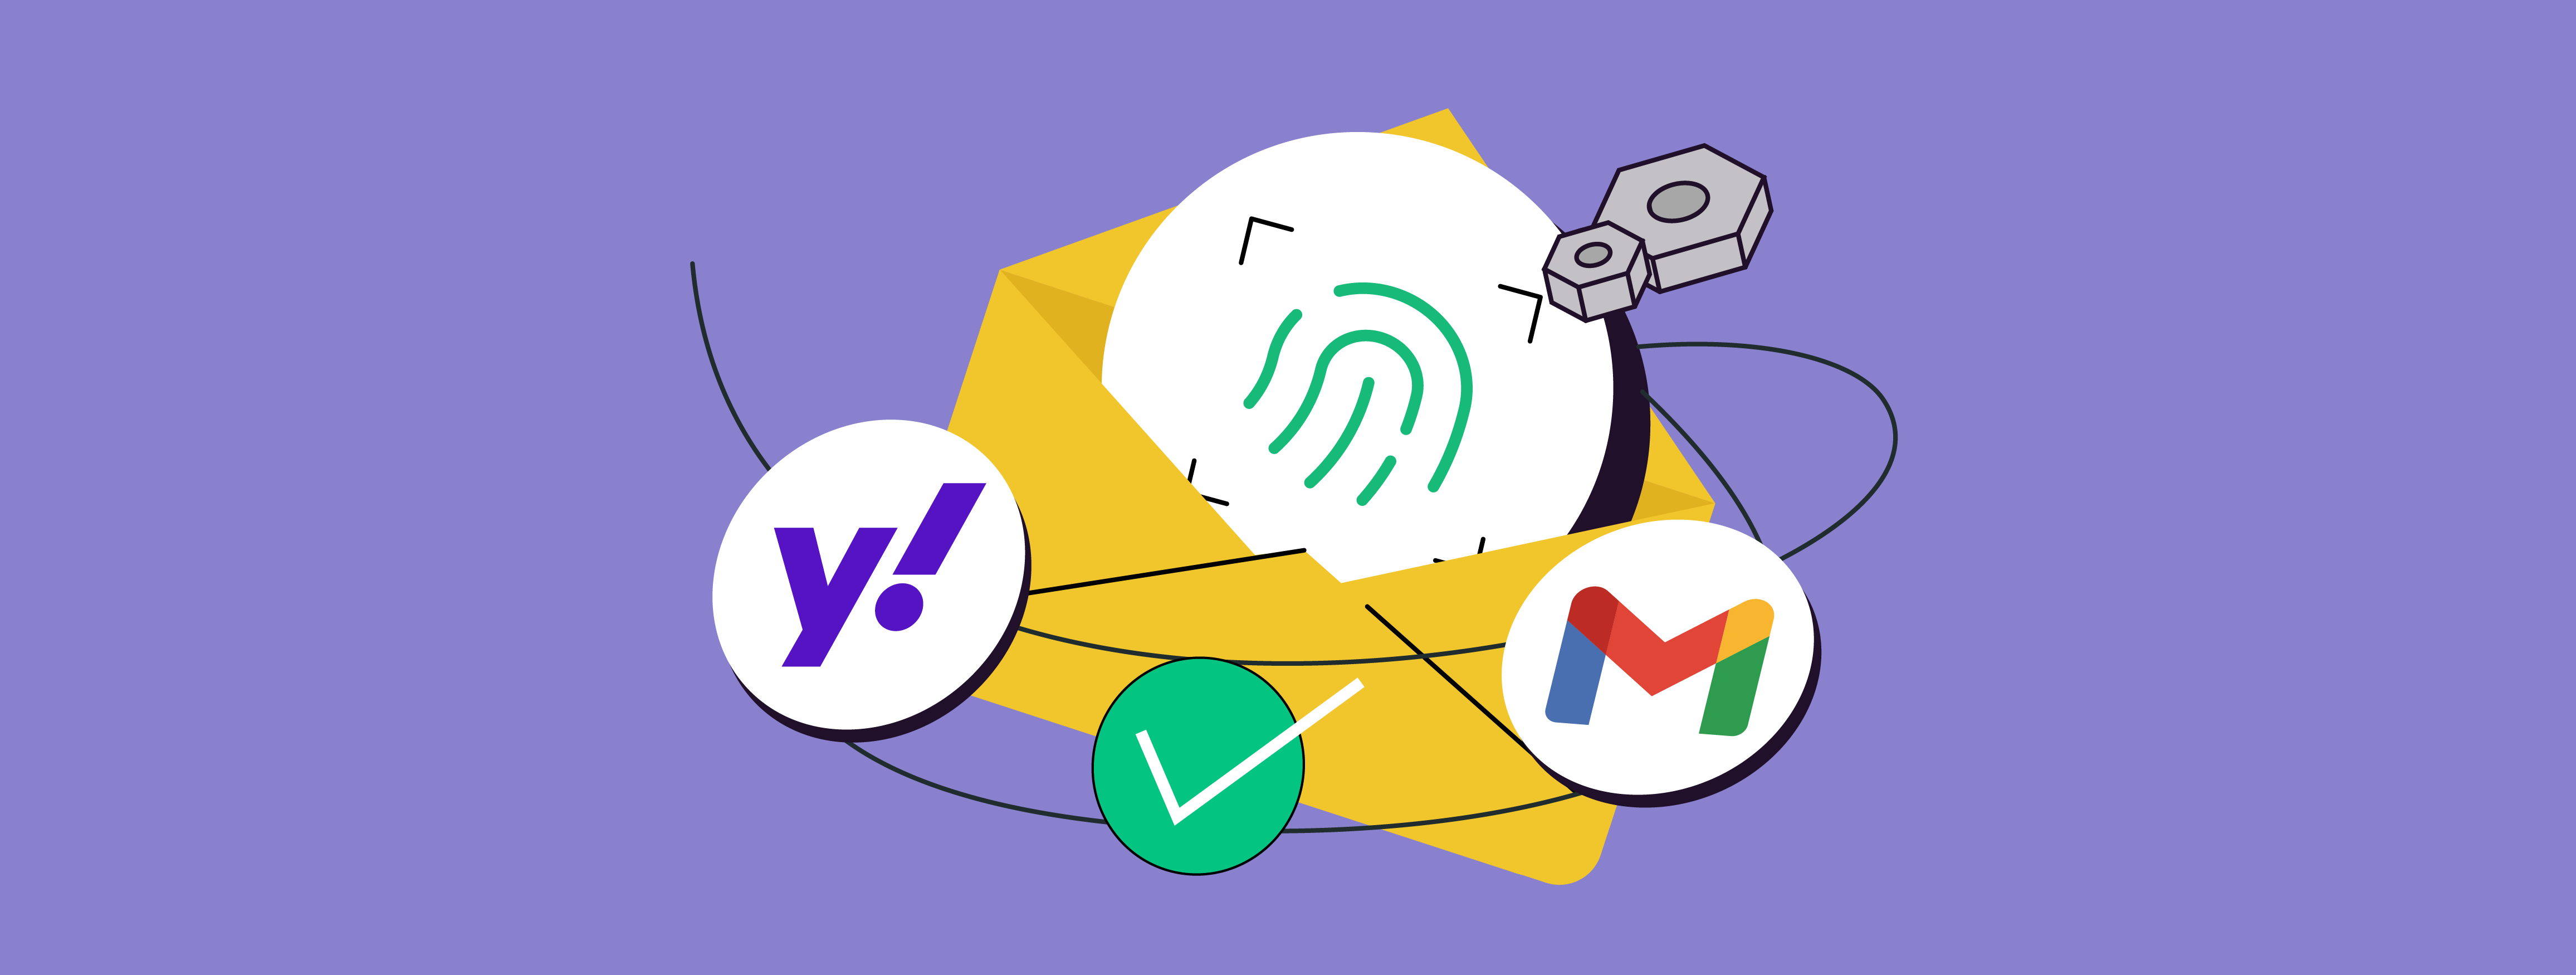 Novas mudanças nos padrões do Gmail e Yahoo: o que elas significam para empresas?